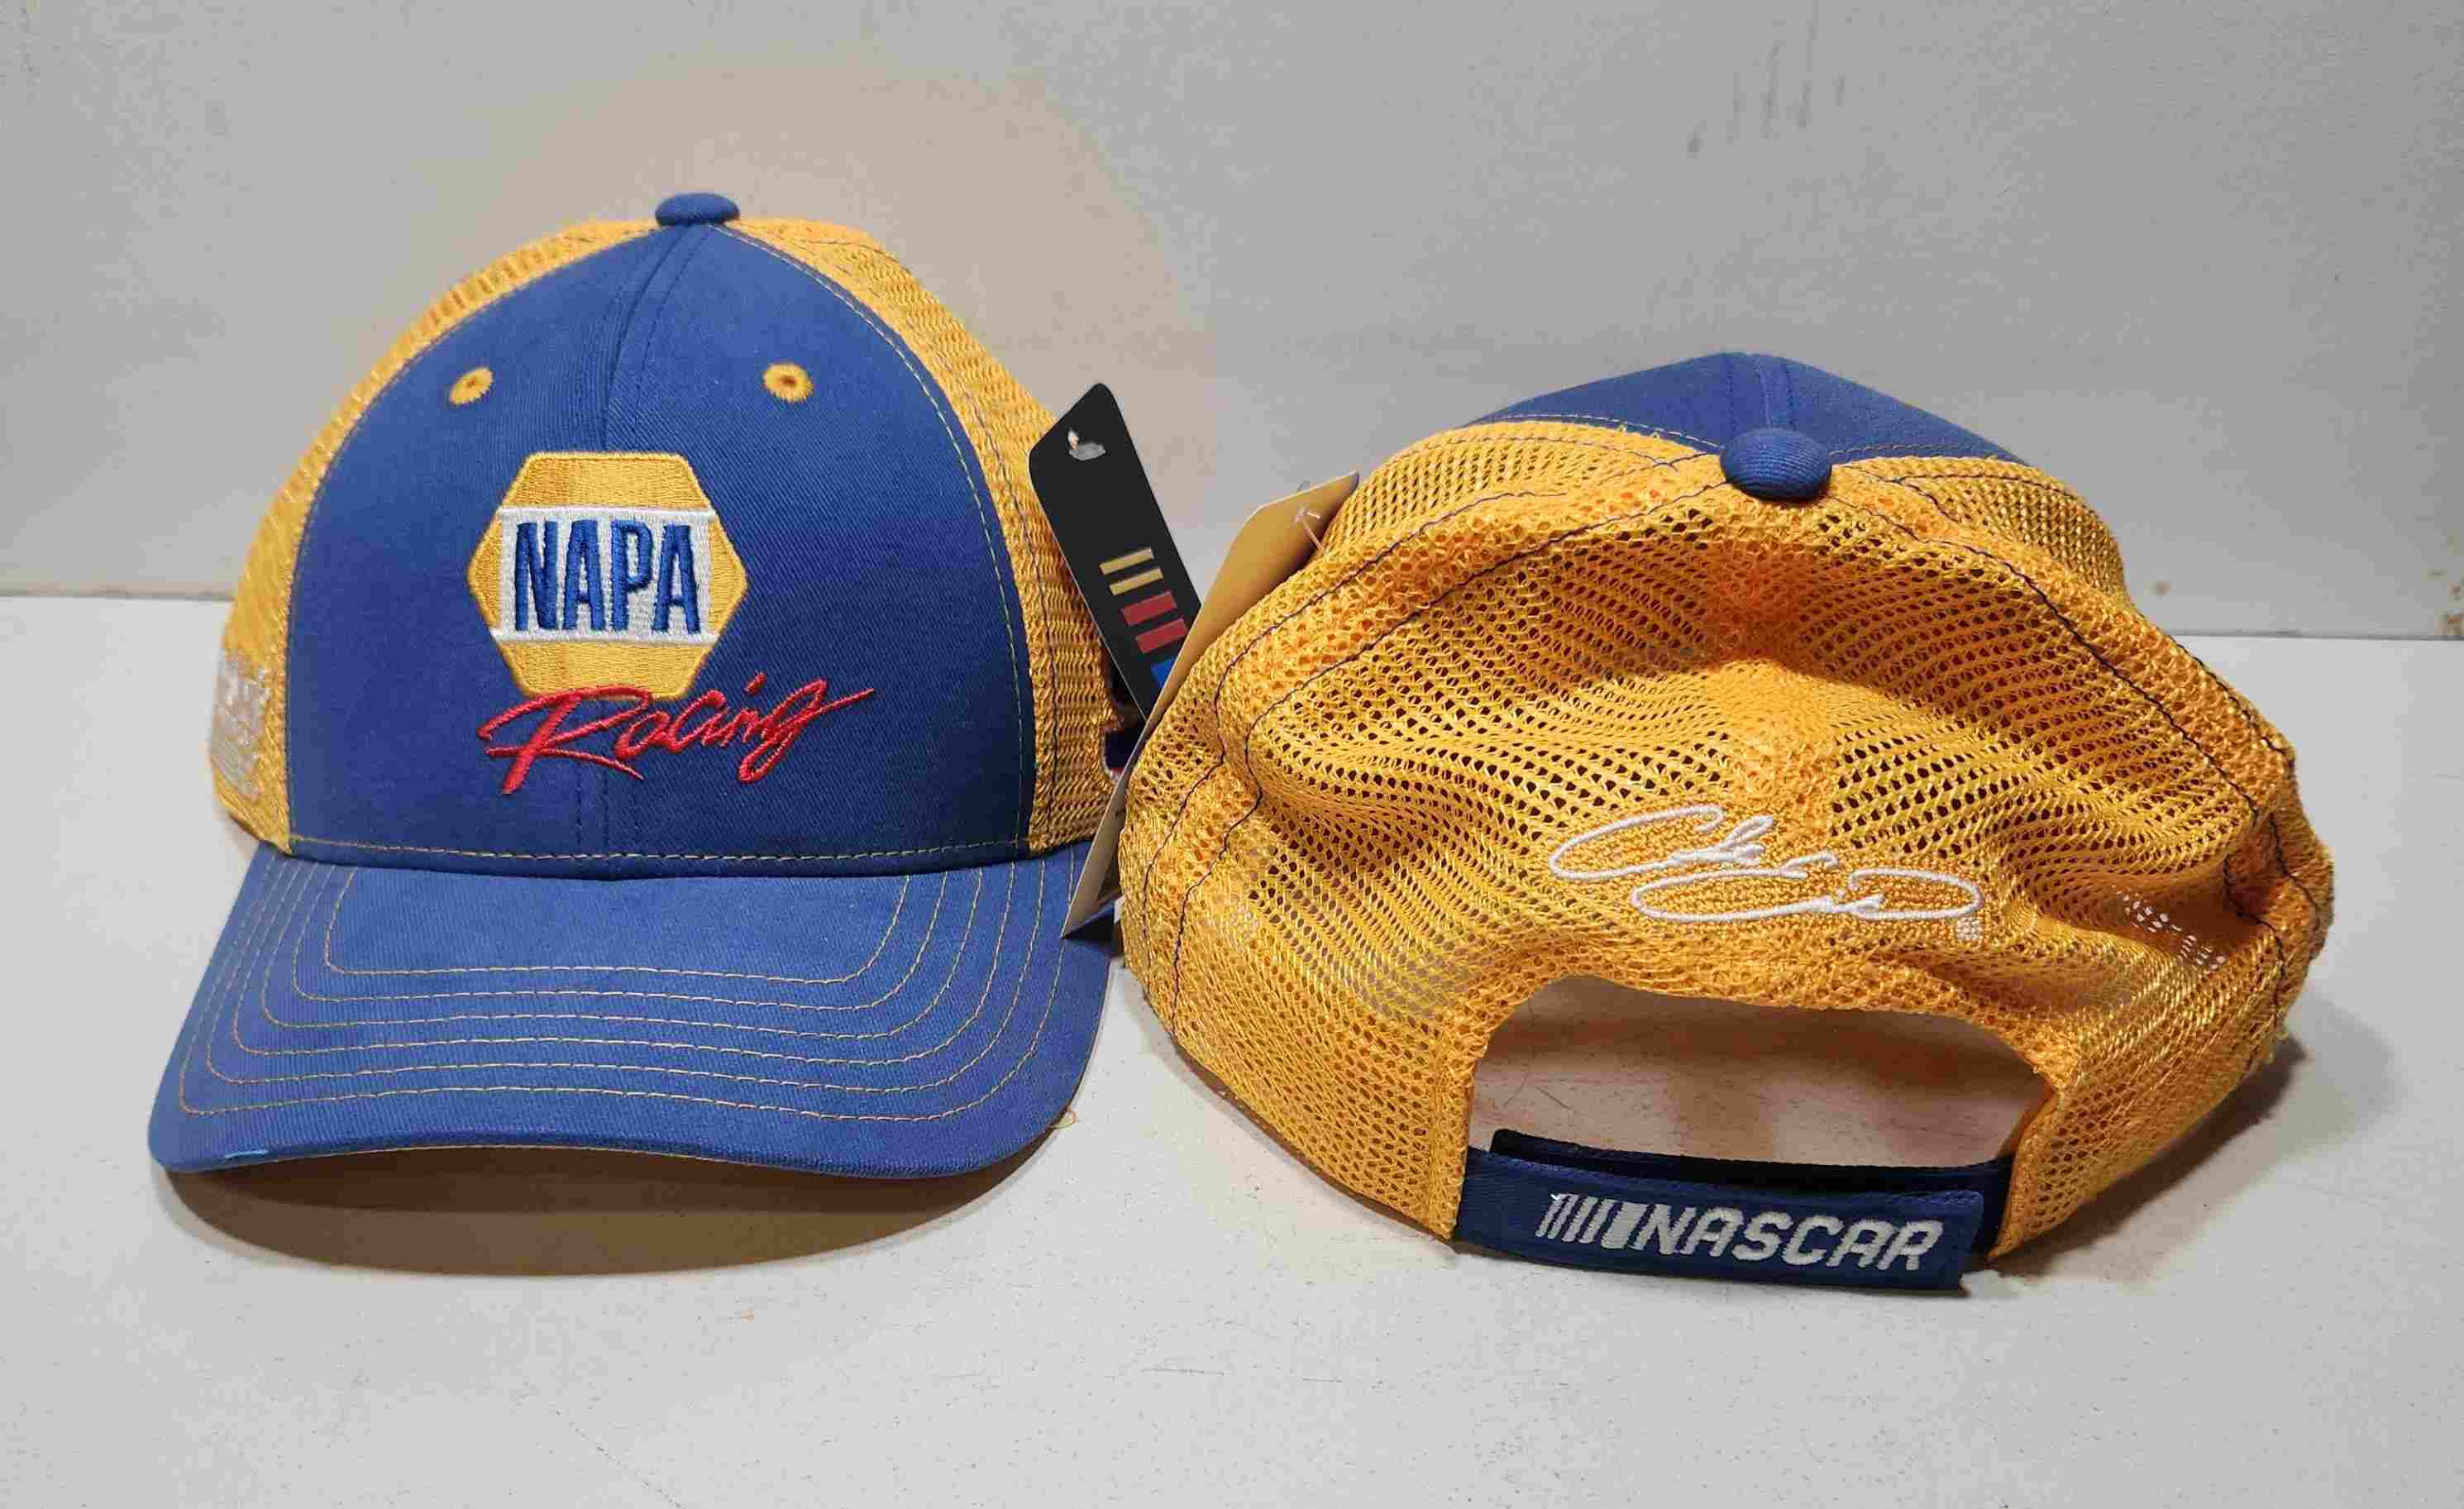 2020 Chase Elliott NAPA "Sponsor" mesh hat